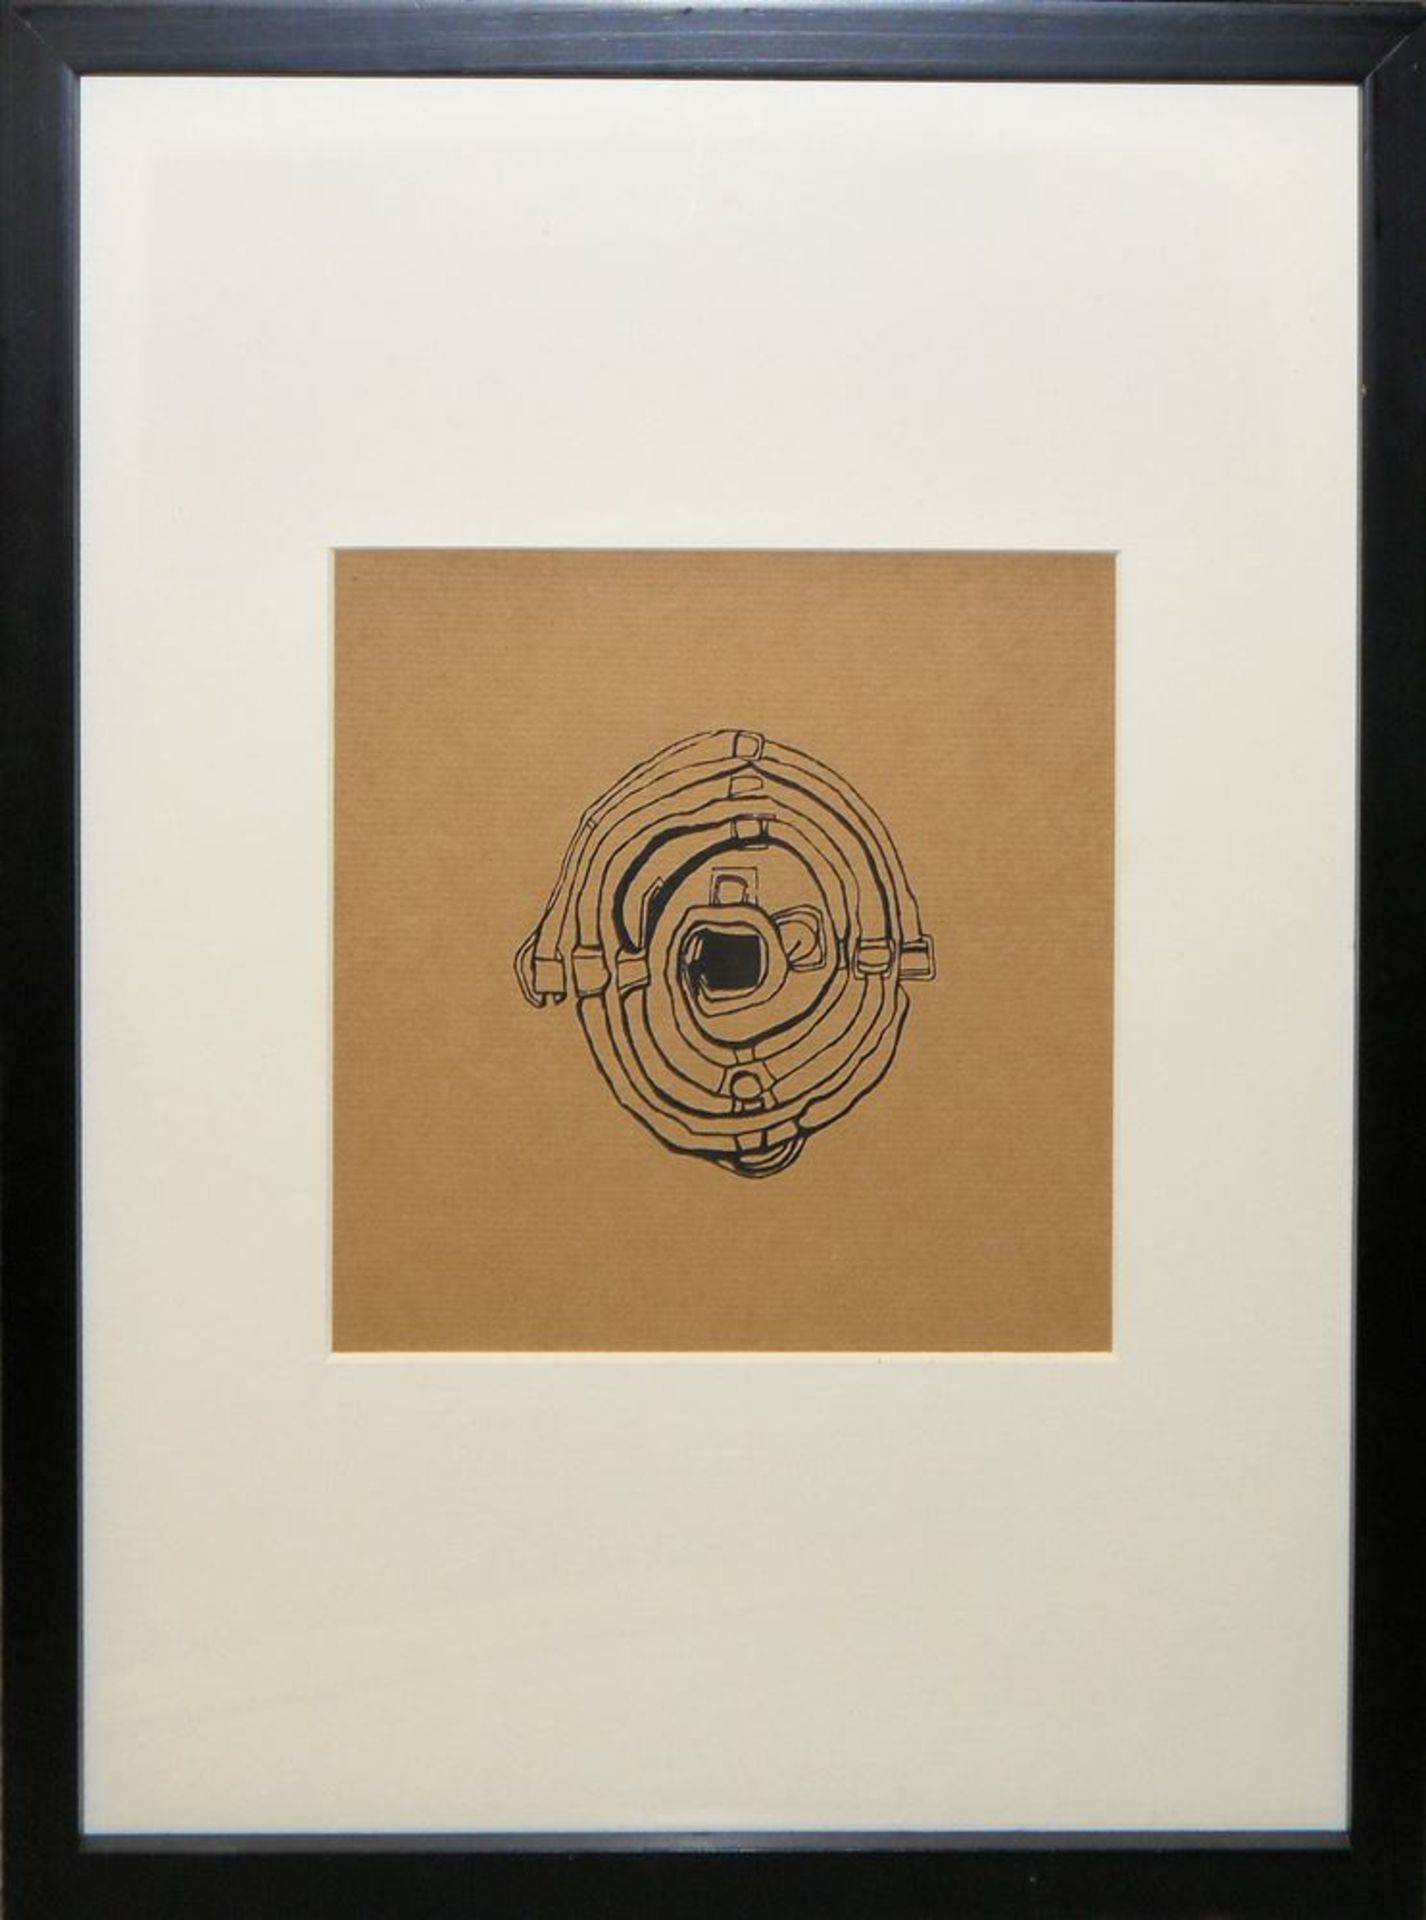 Friedensreich Hundertwaser, "Panderma", nummeriert, gerahmtFriedensreich Hundertwasser, 1928